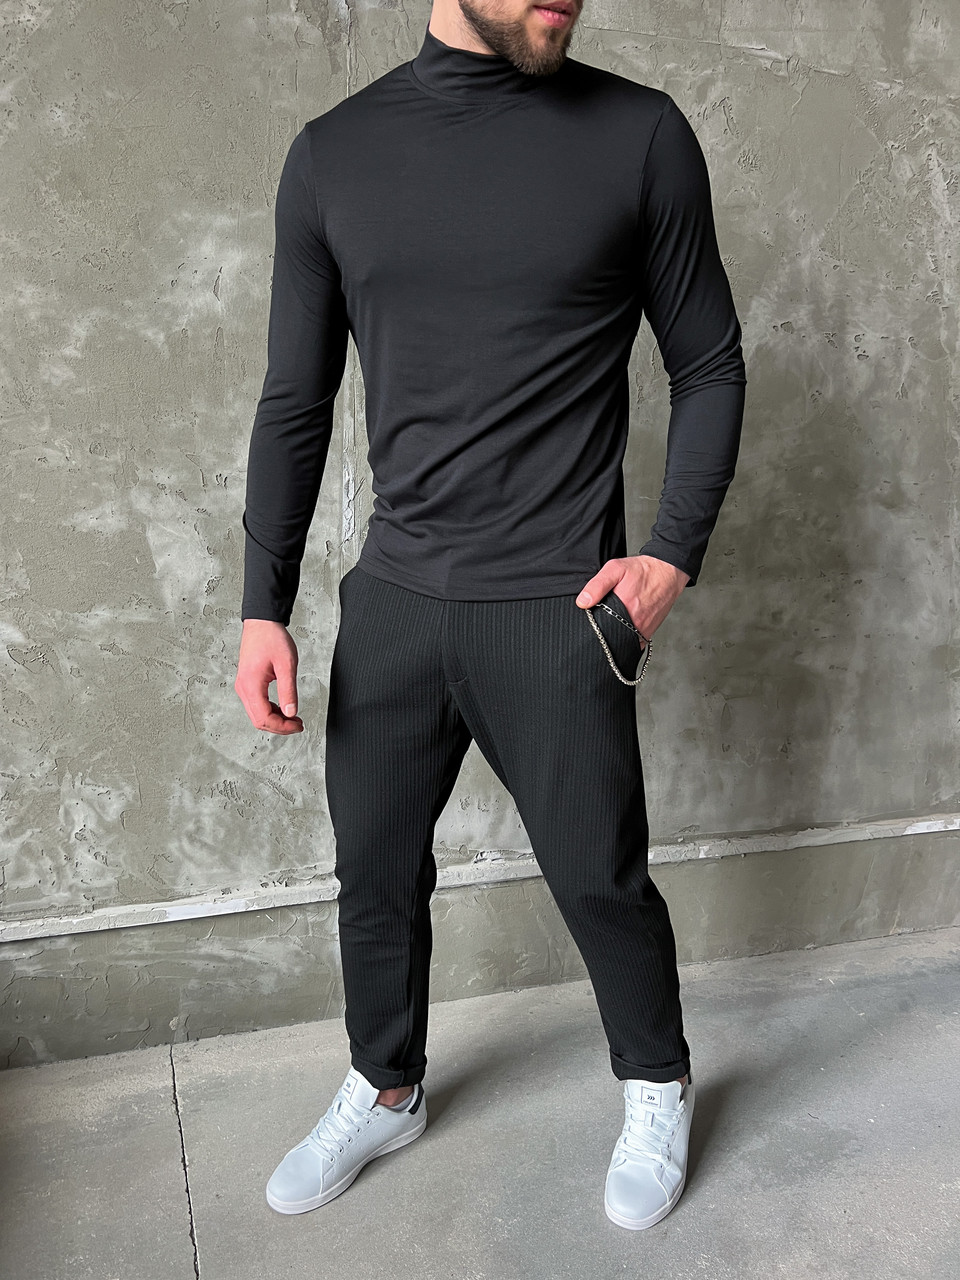 Штаны чинос мужские черные модель Вилл - Фото 2